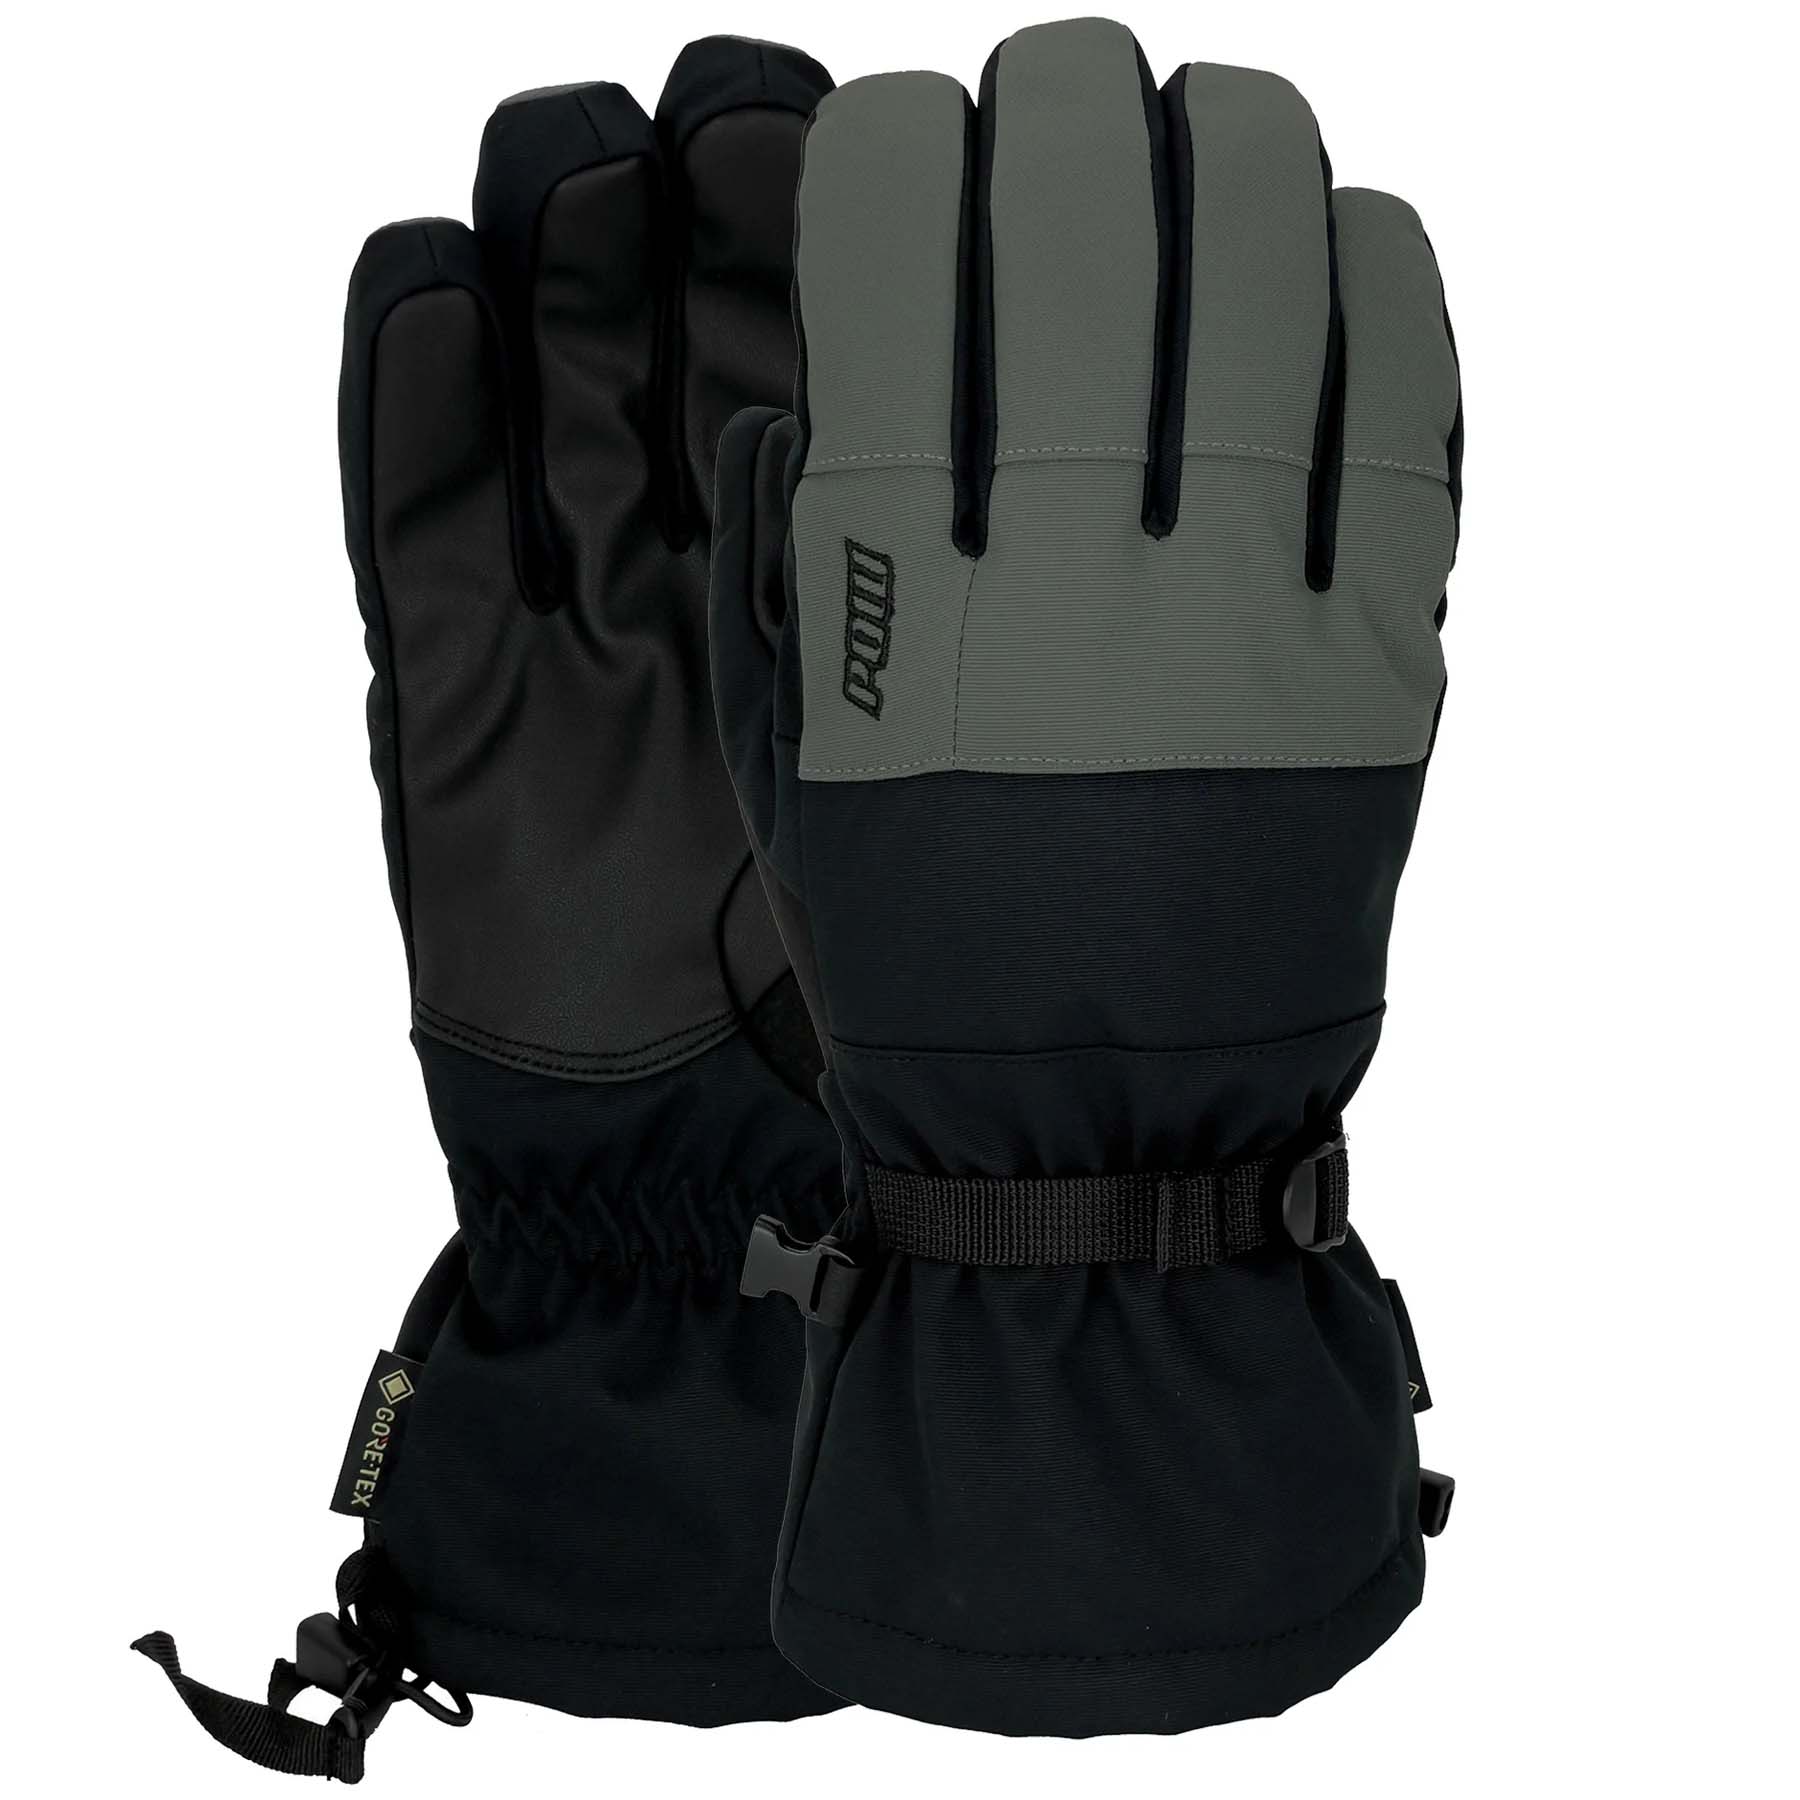 POW Trench GTX Ski / Snowboard Gore-Tex Gloves